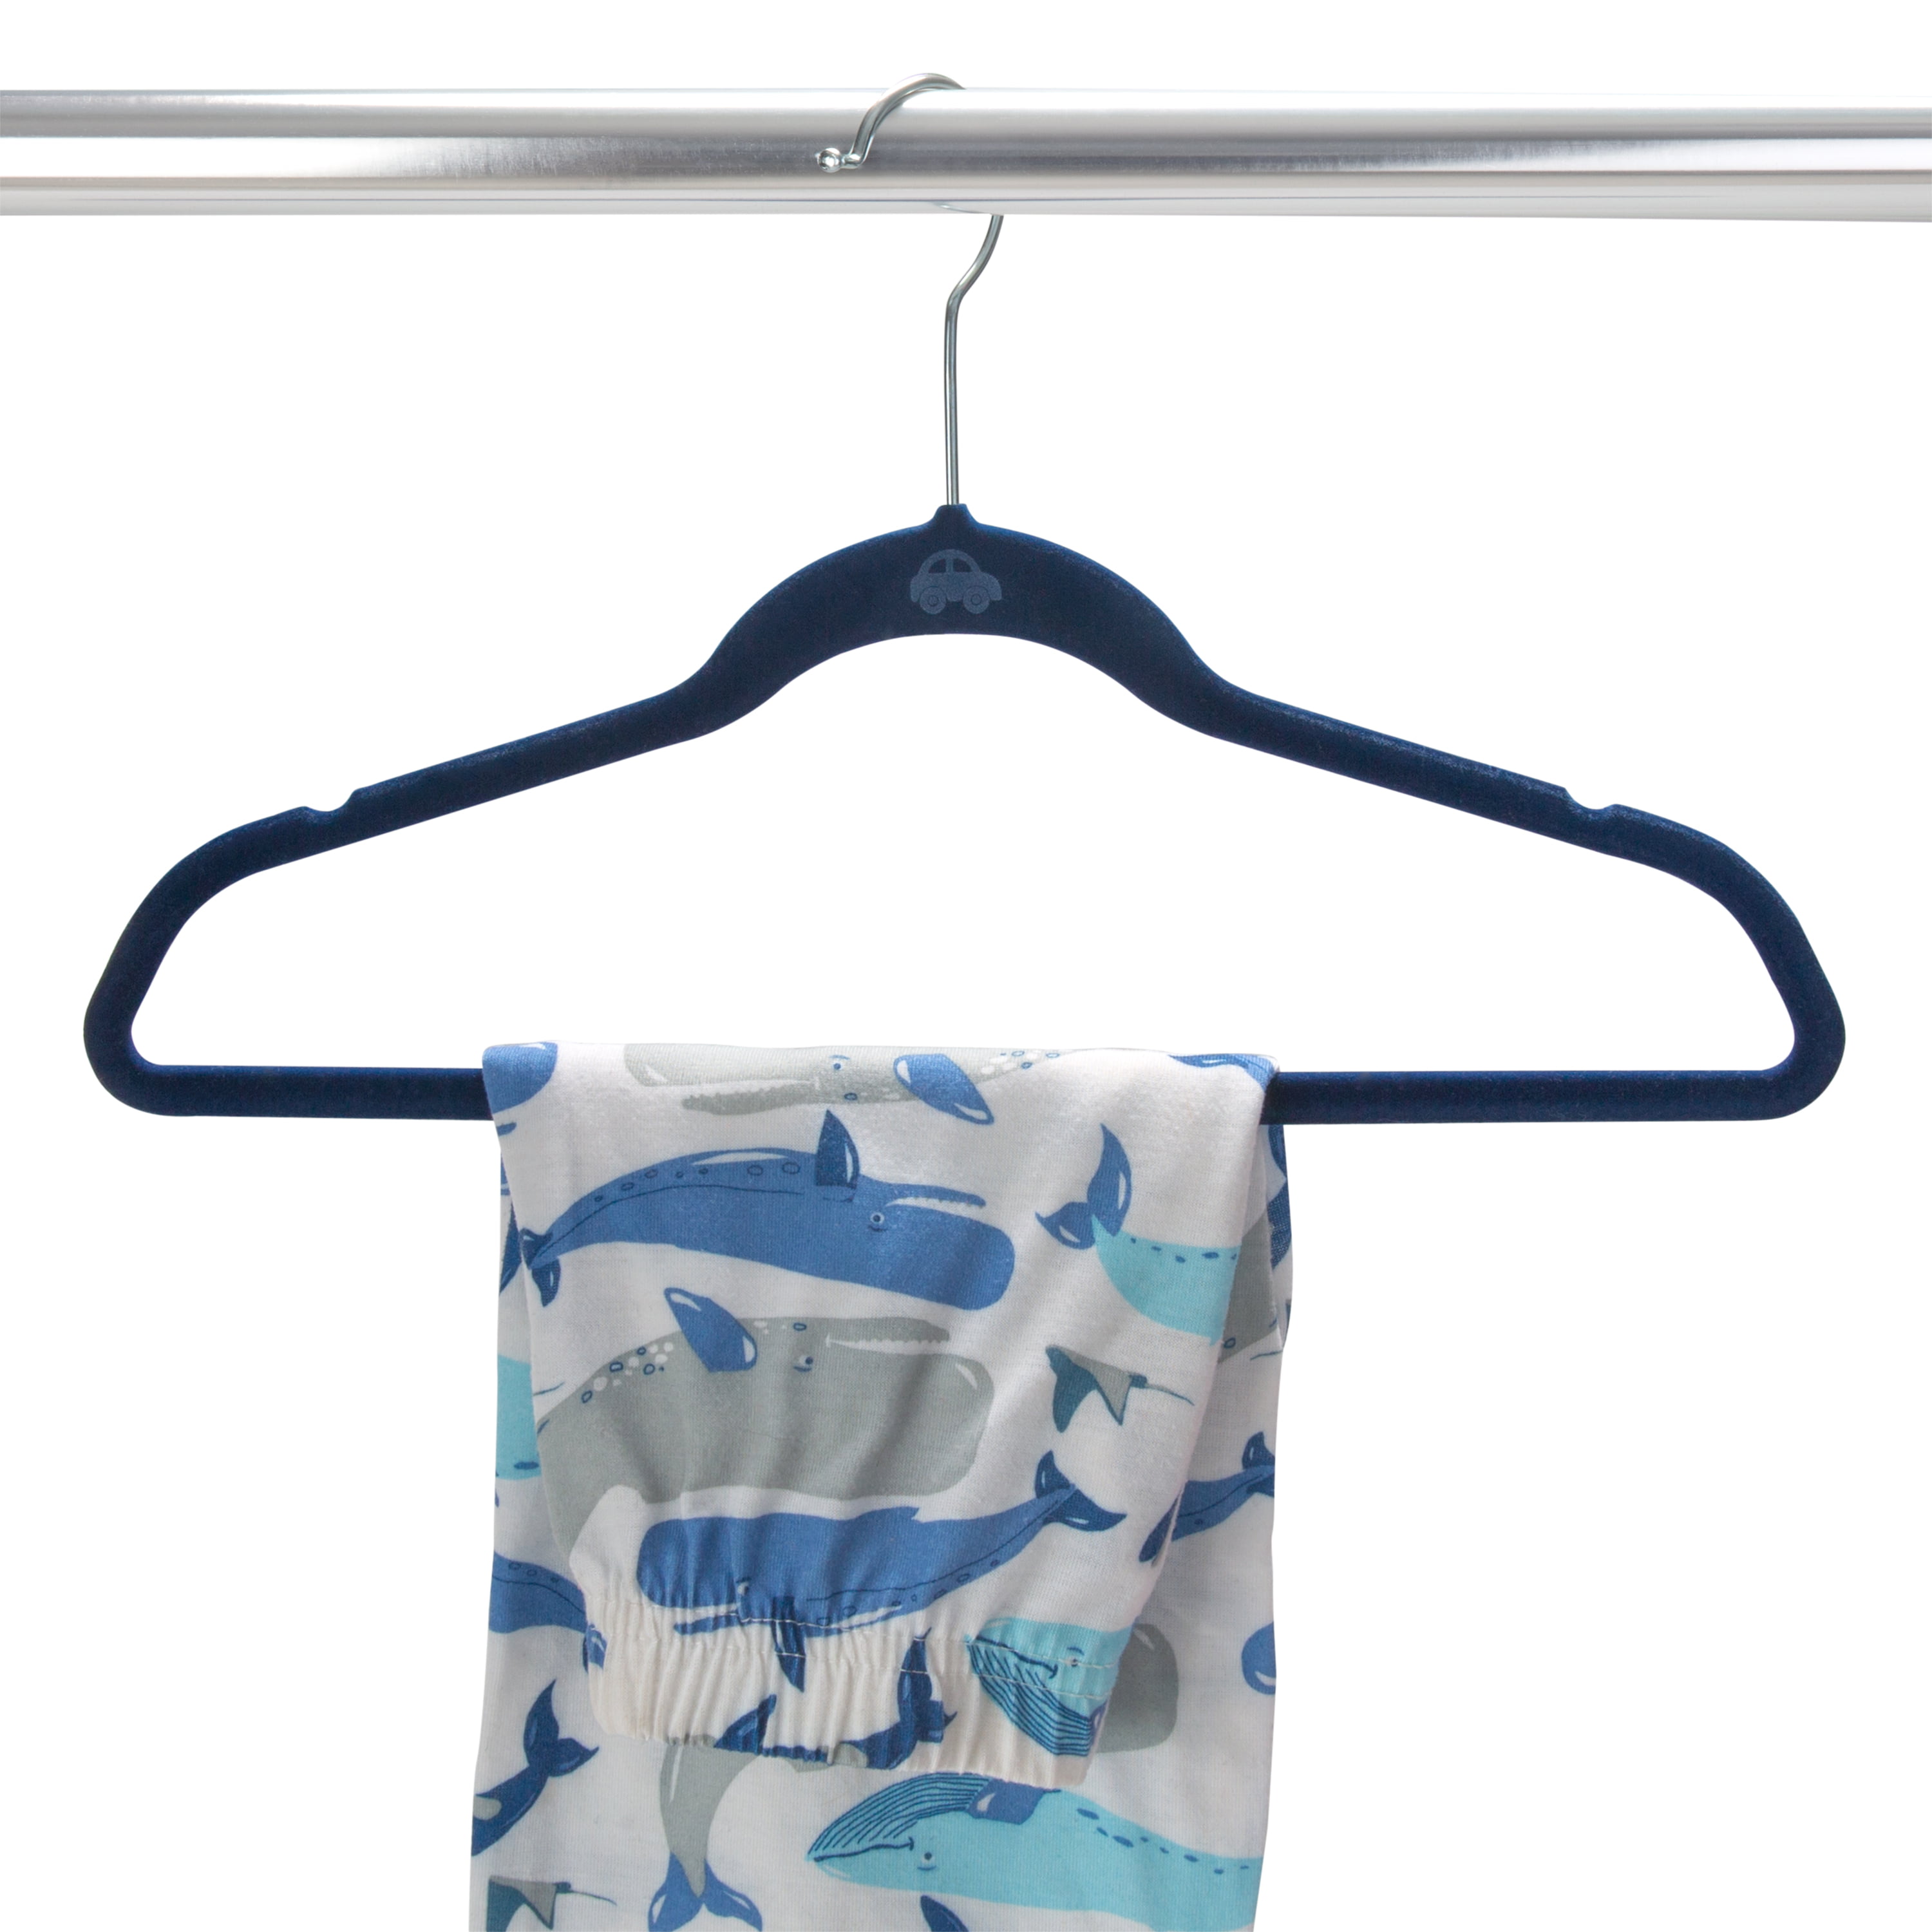 Kids Clothes Hangers. Baby Personalised Cute Animal Hangers. -  Israel